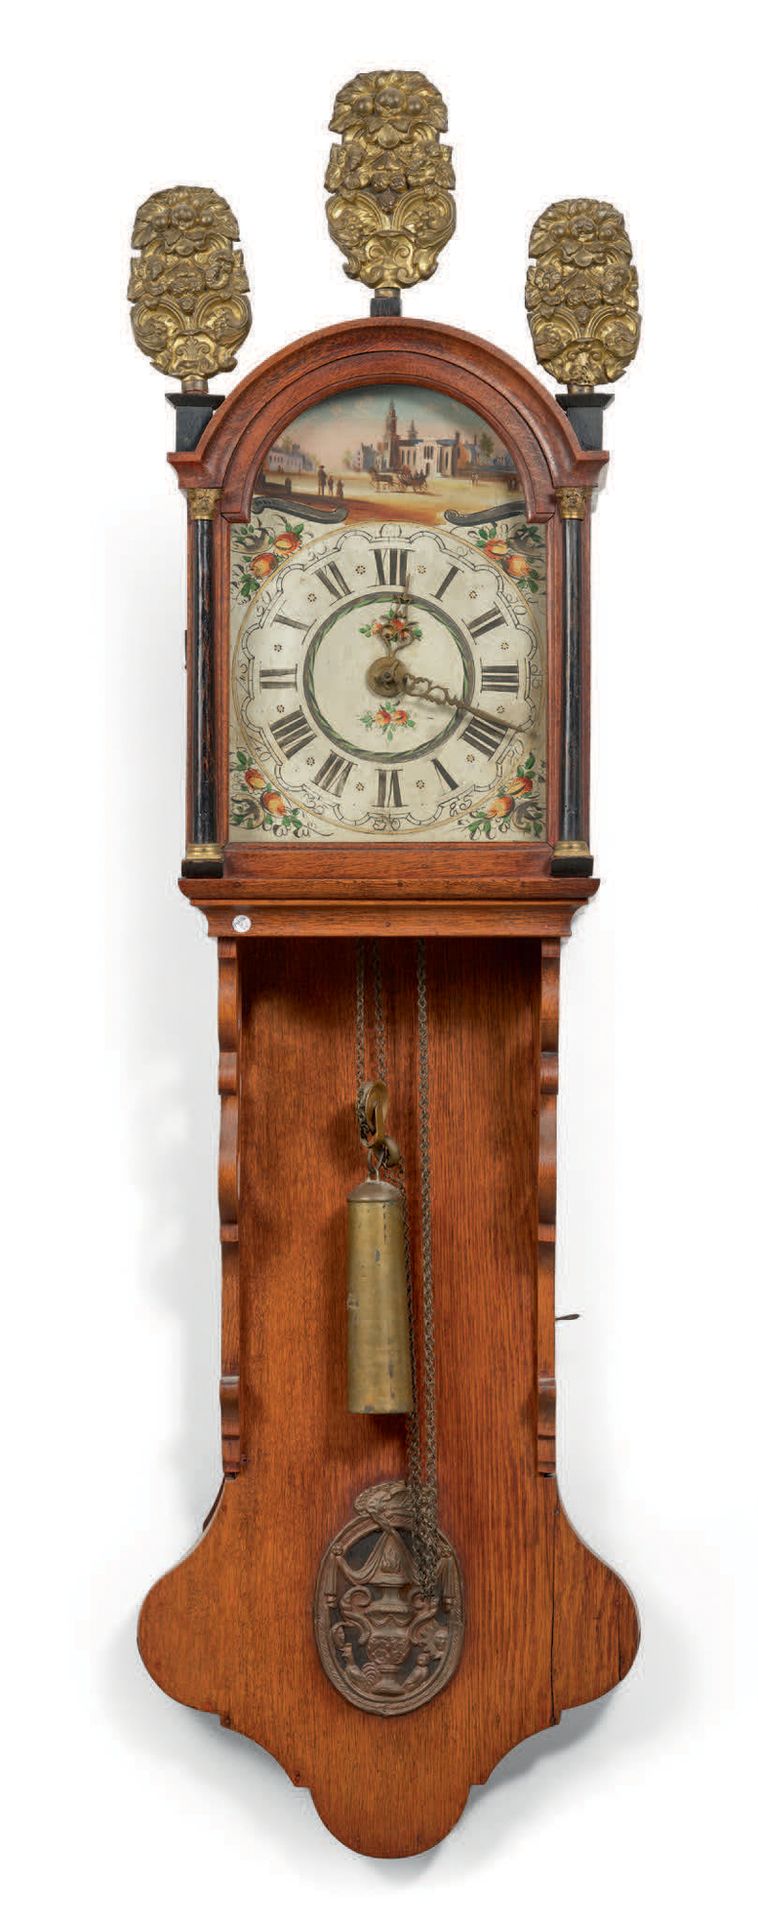 EUROPE DU NORD - Début XIXe siècle Horloge « frisonne » murale
Caisse en bois av&hellip;